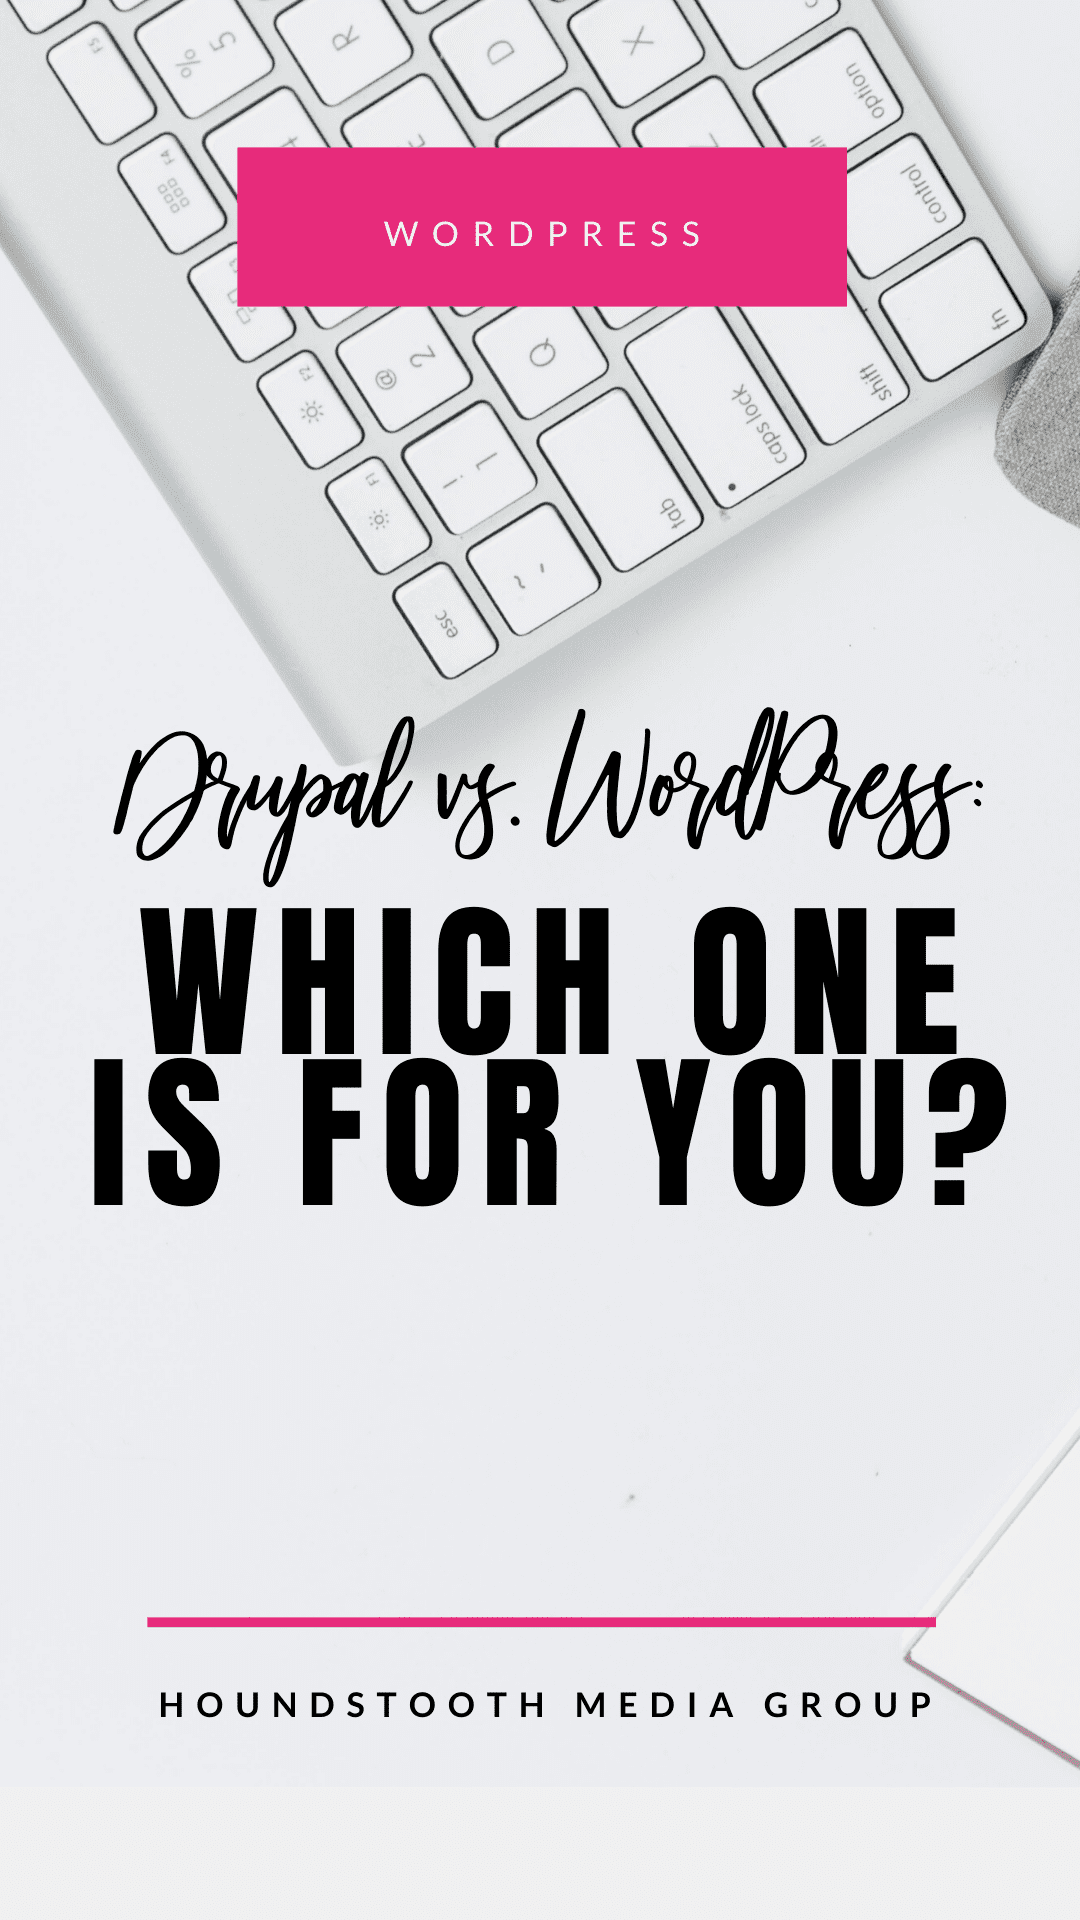 Drupal vs WordPress: Which Should You Choose?